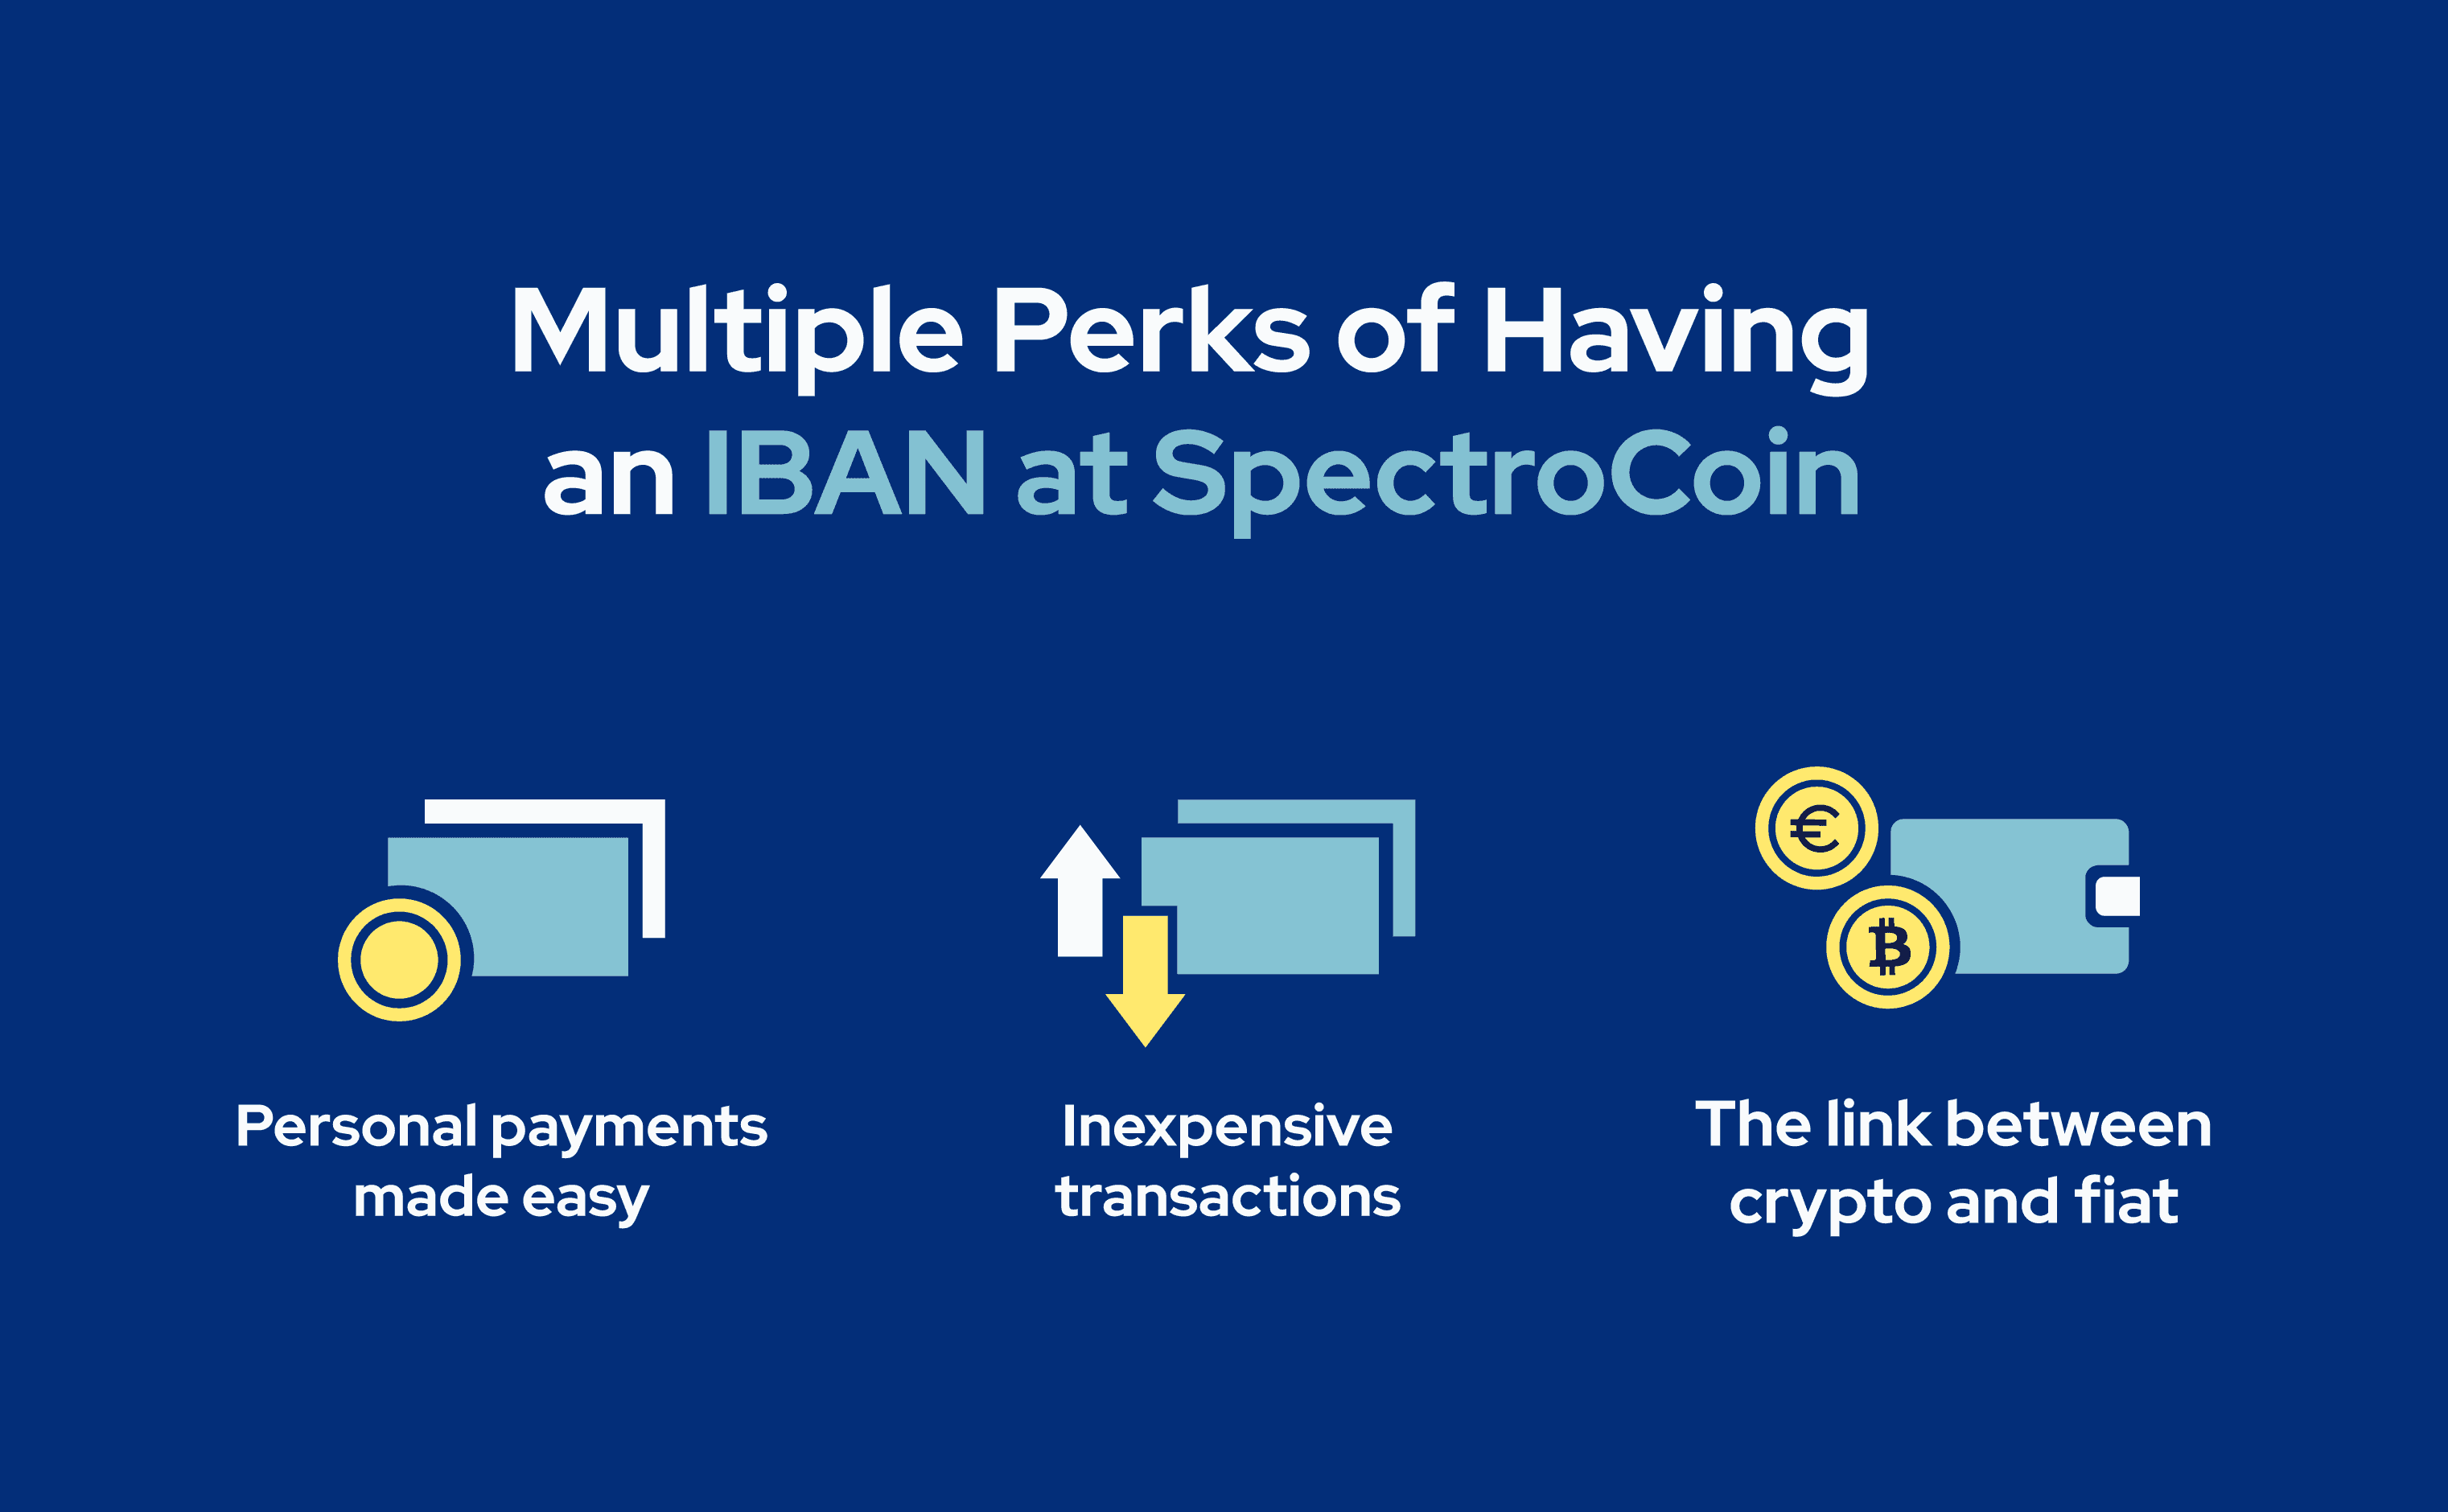 Šajā attēlā tiek izskaidrotas galvenās priekšrocības, ko sniedz IBAN SpectroCoin platformā.